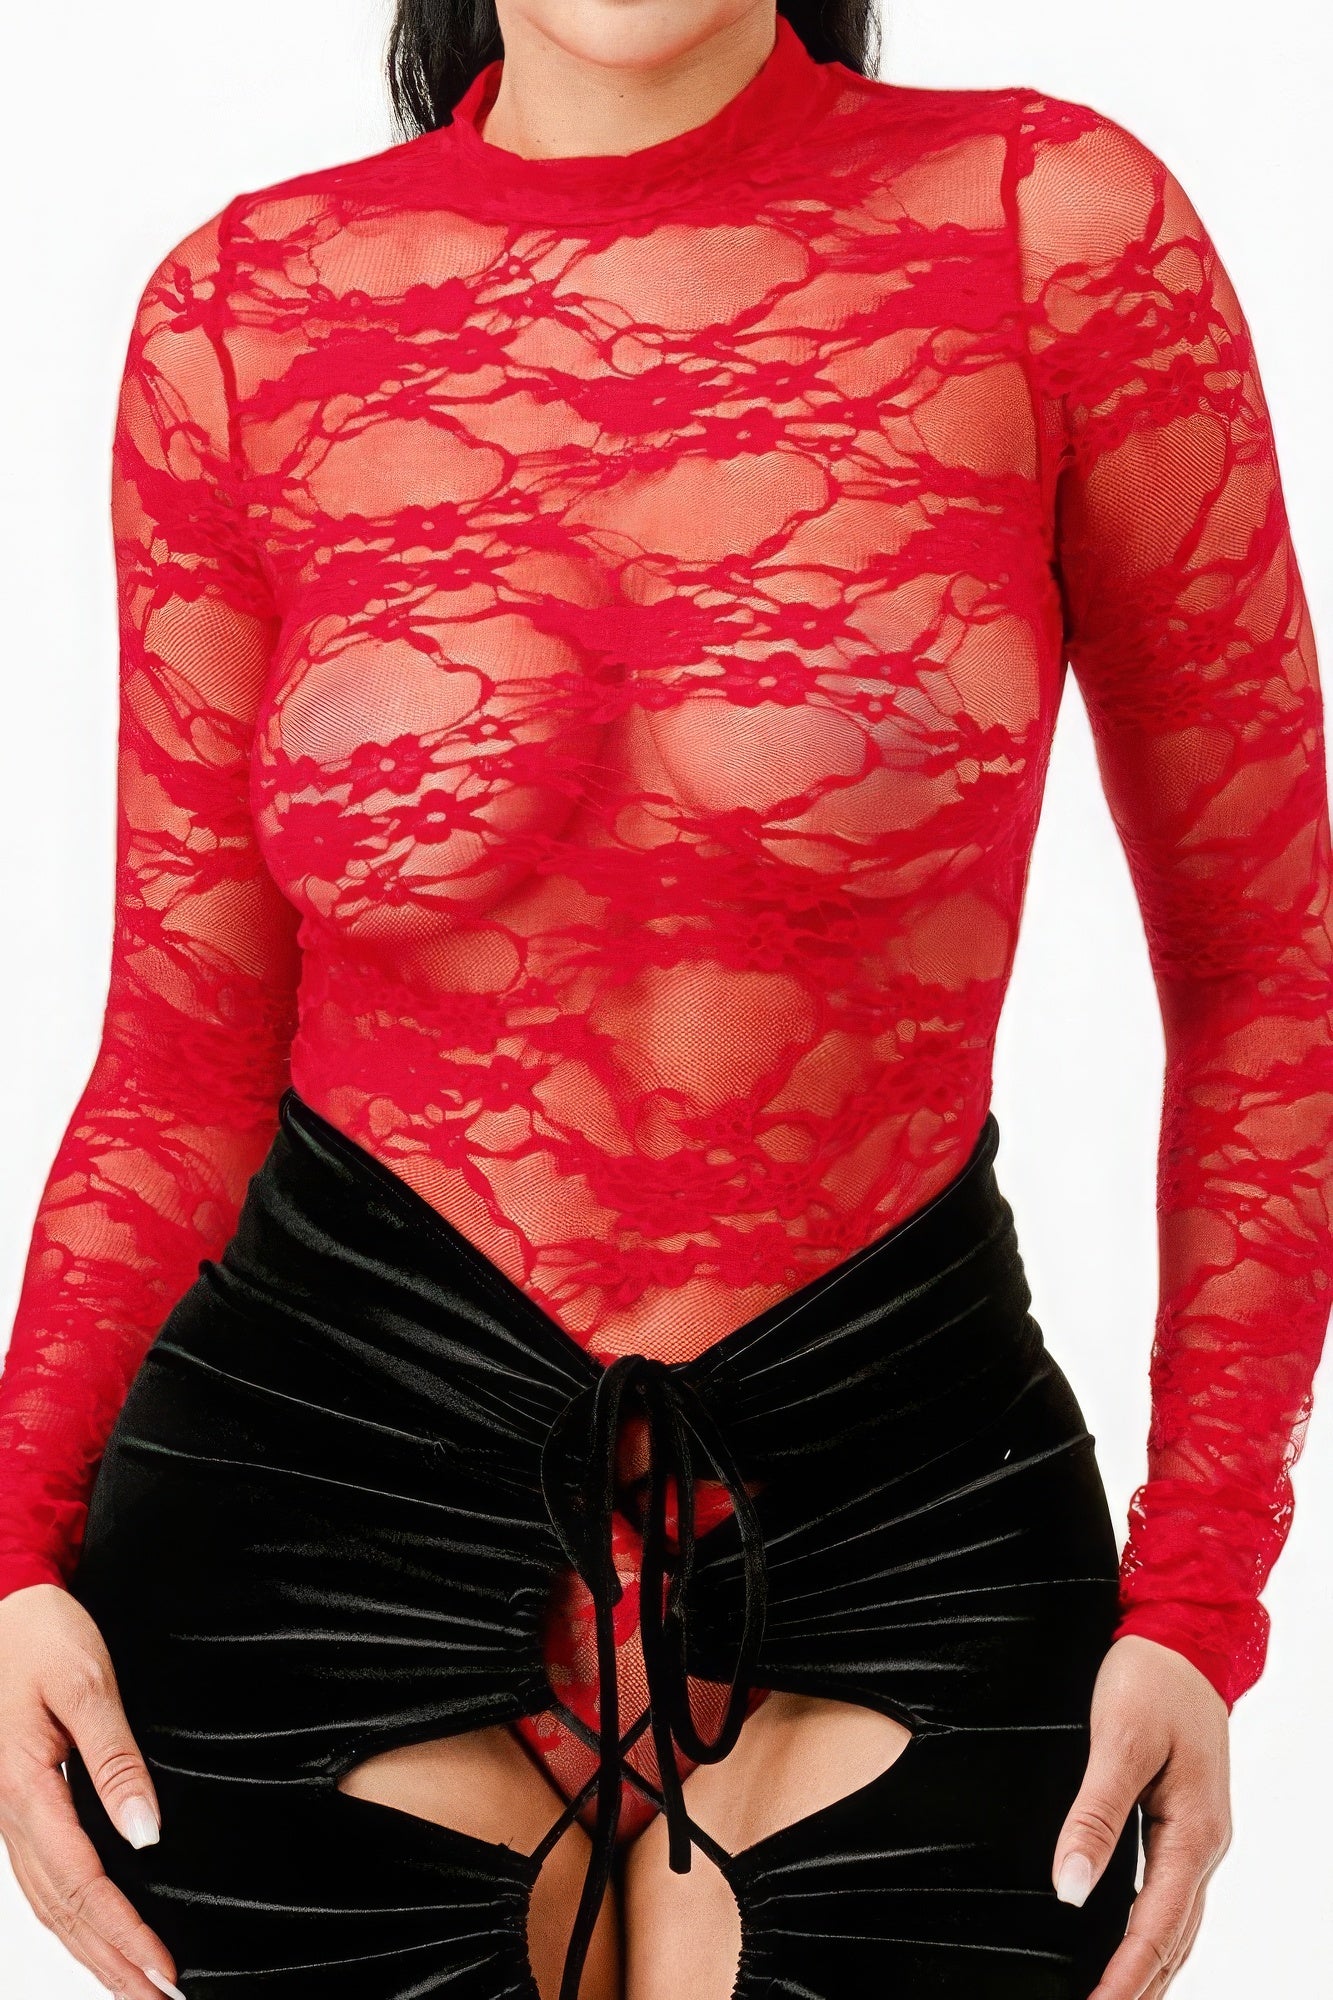 Lace Bodysuit & Mermaid Skirt - Supreme Deals